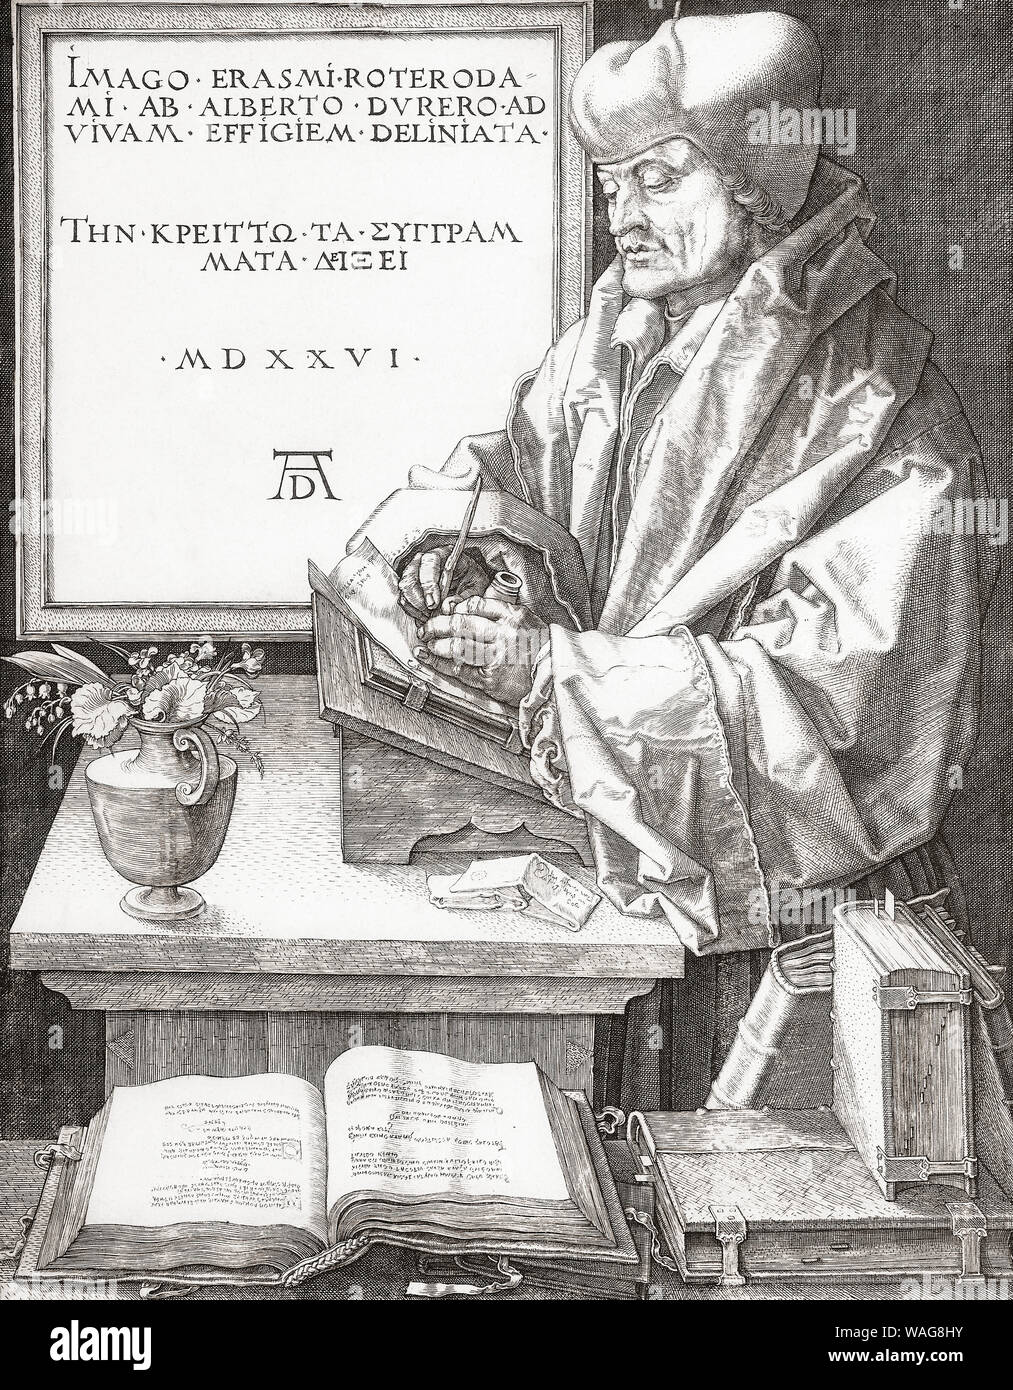 Desiderius Erasmus Roterodamus, 1466 - 1536, aka Erasmus of Rotterdam.  Dutch Renaissance humanist, Catholic priest & theologian. Stock Photo